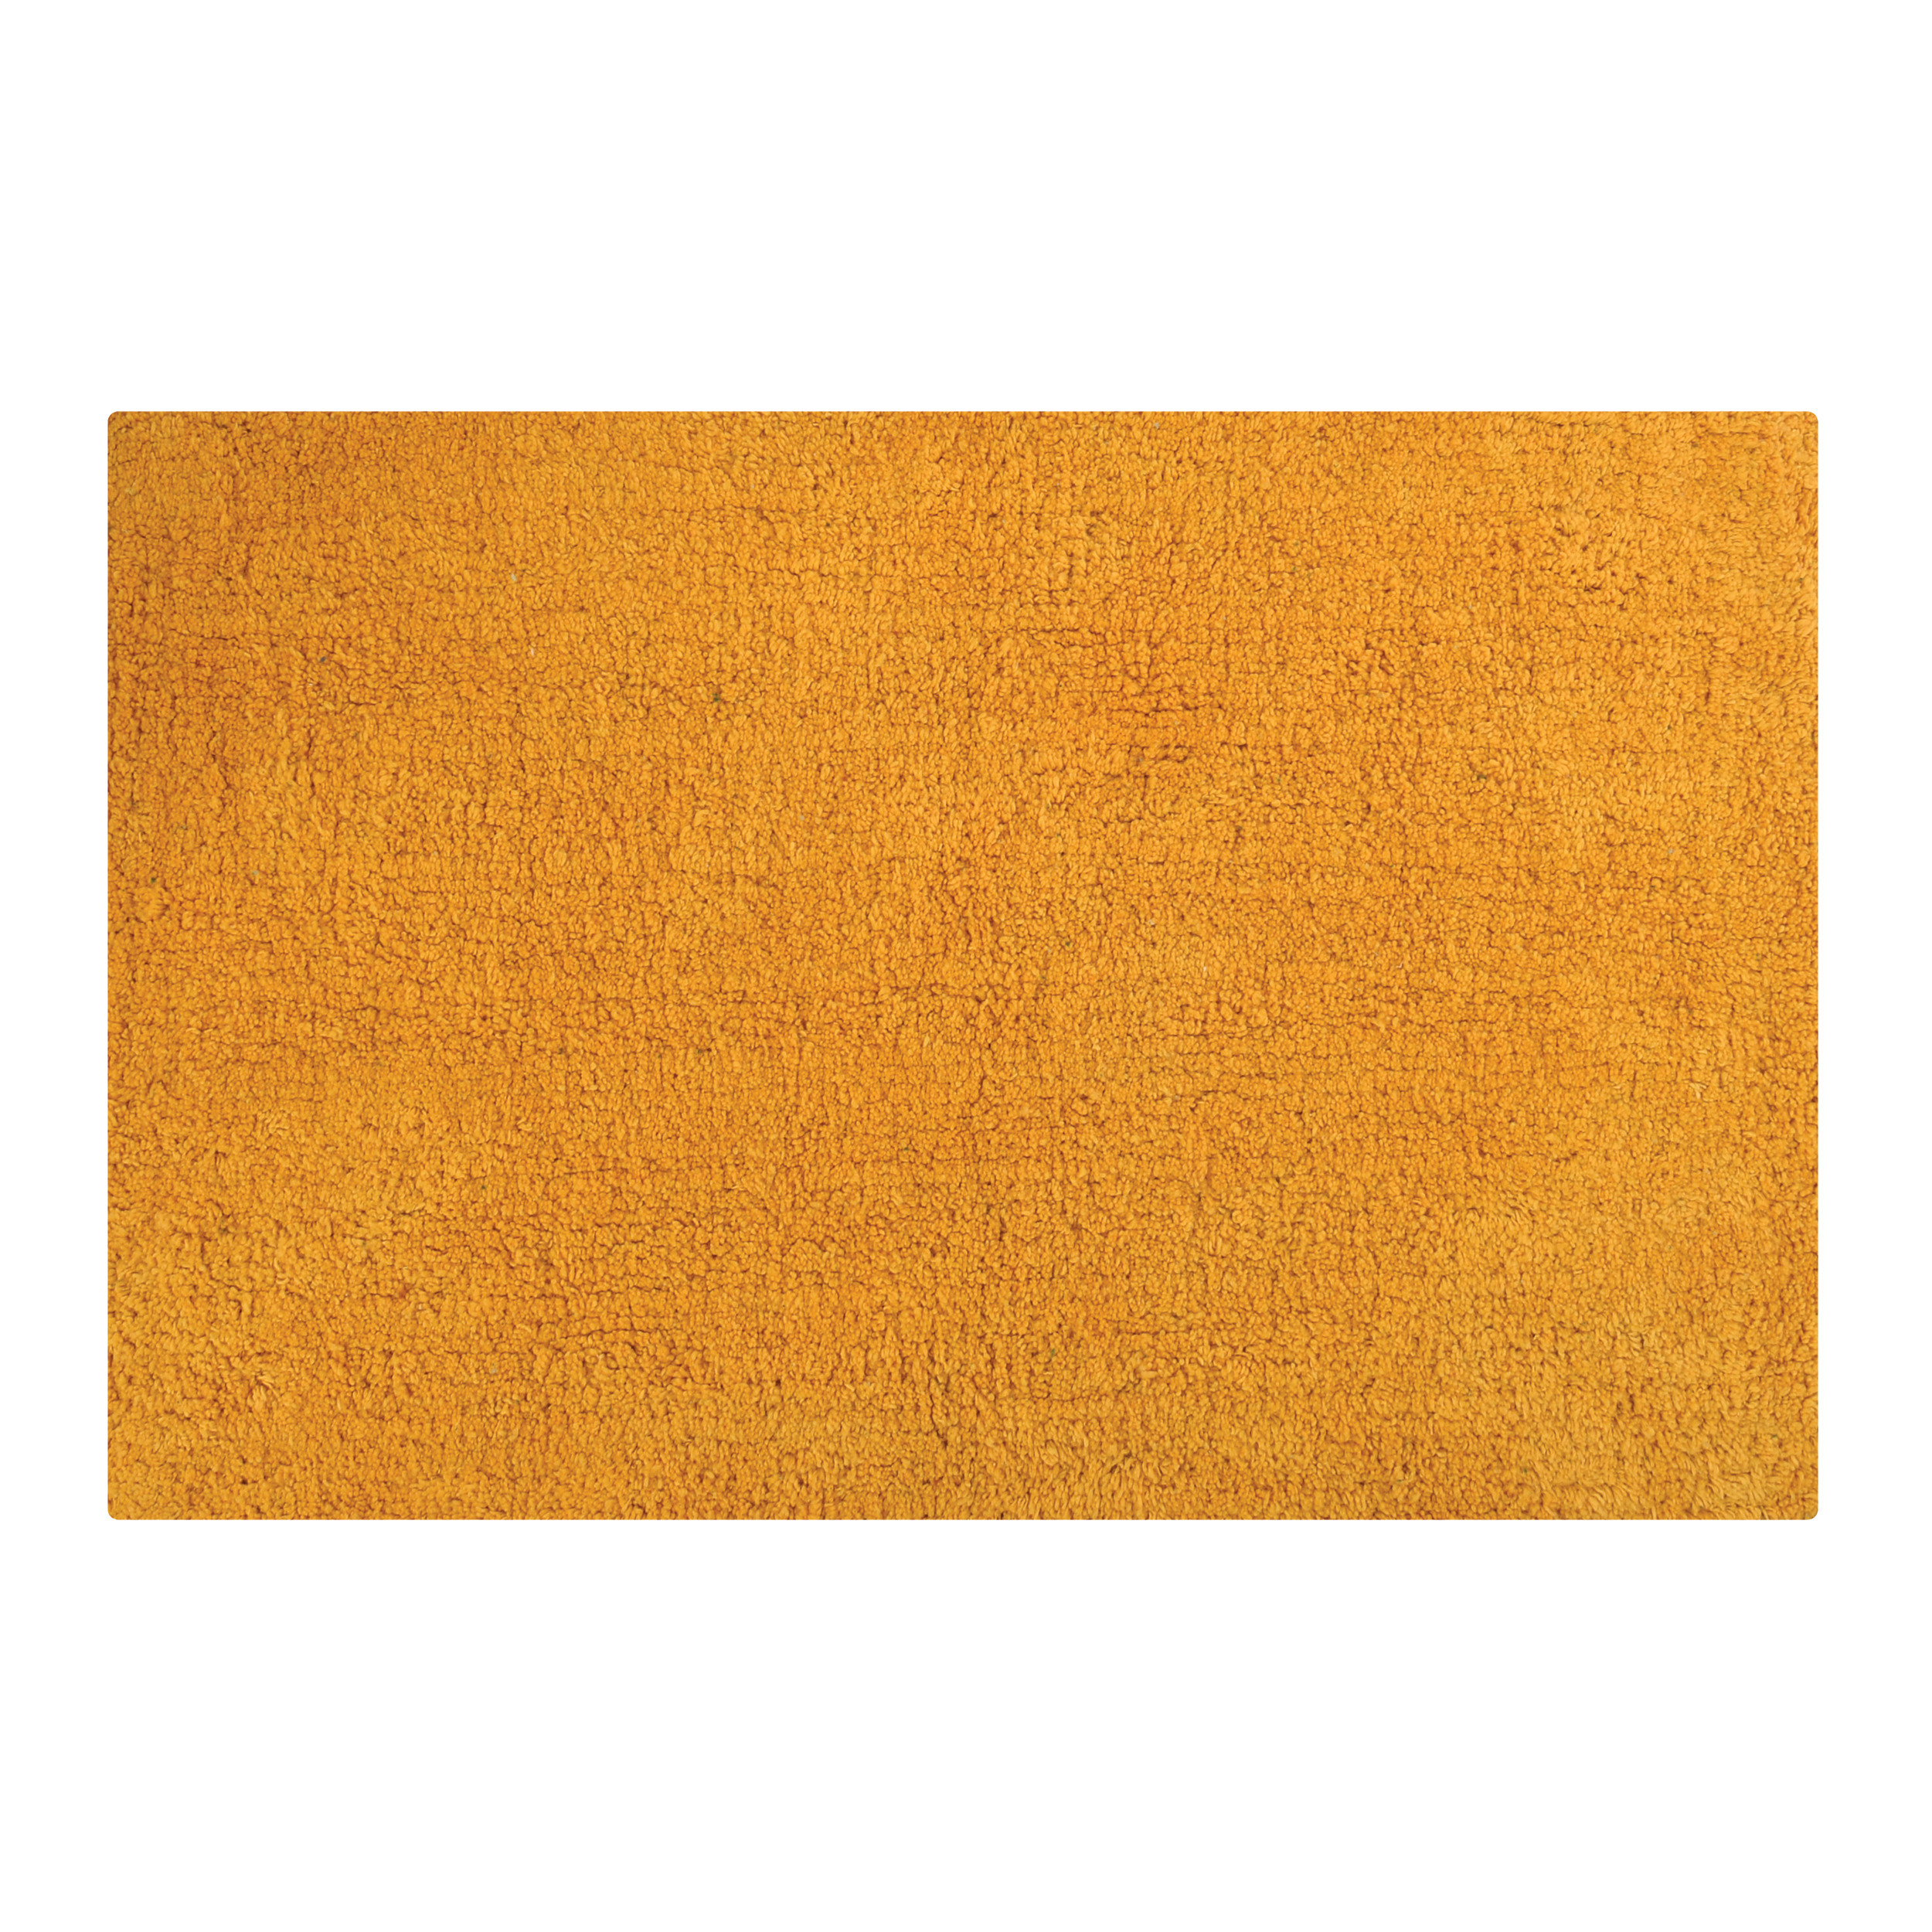 Badkamerkleedje-badmat tapijtje voor op de vloer saffraan geel 40 x 60 cm